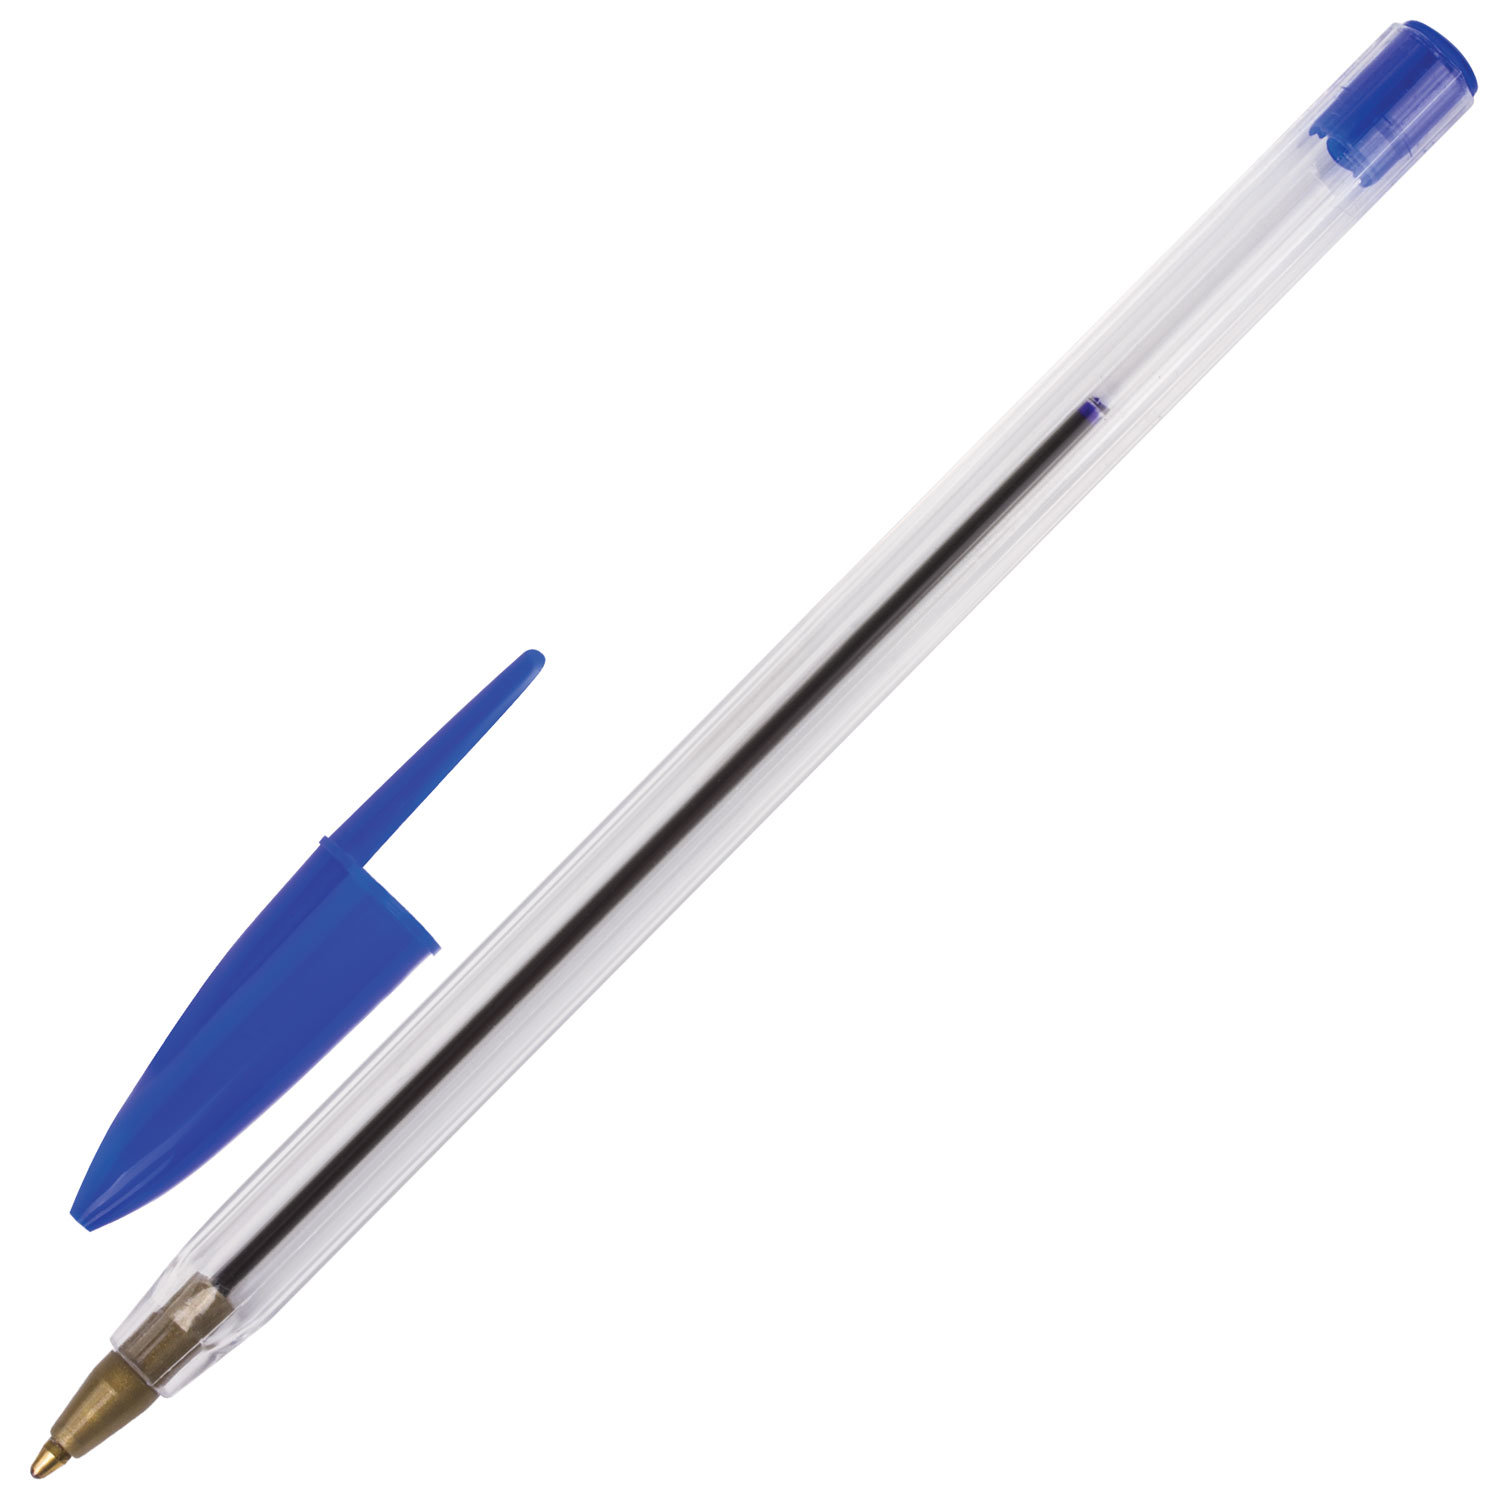 STAFF Ручка STAFF 141672, комплект 100 шт.